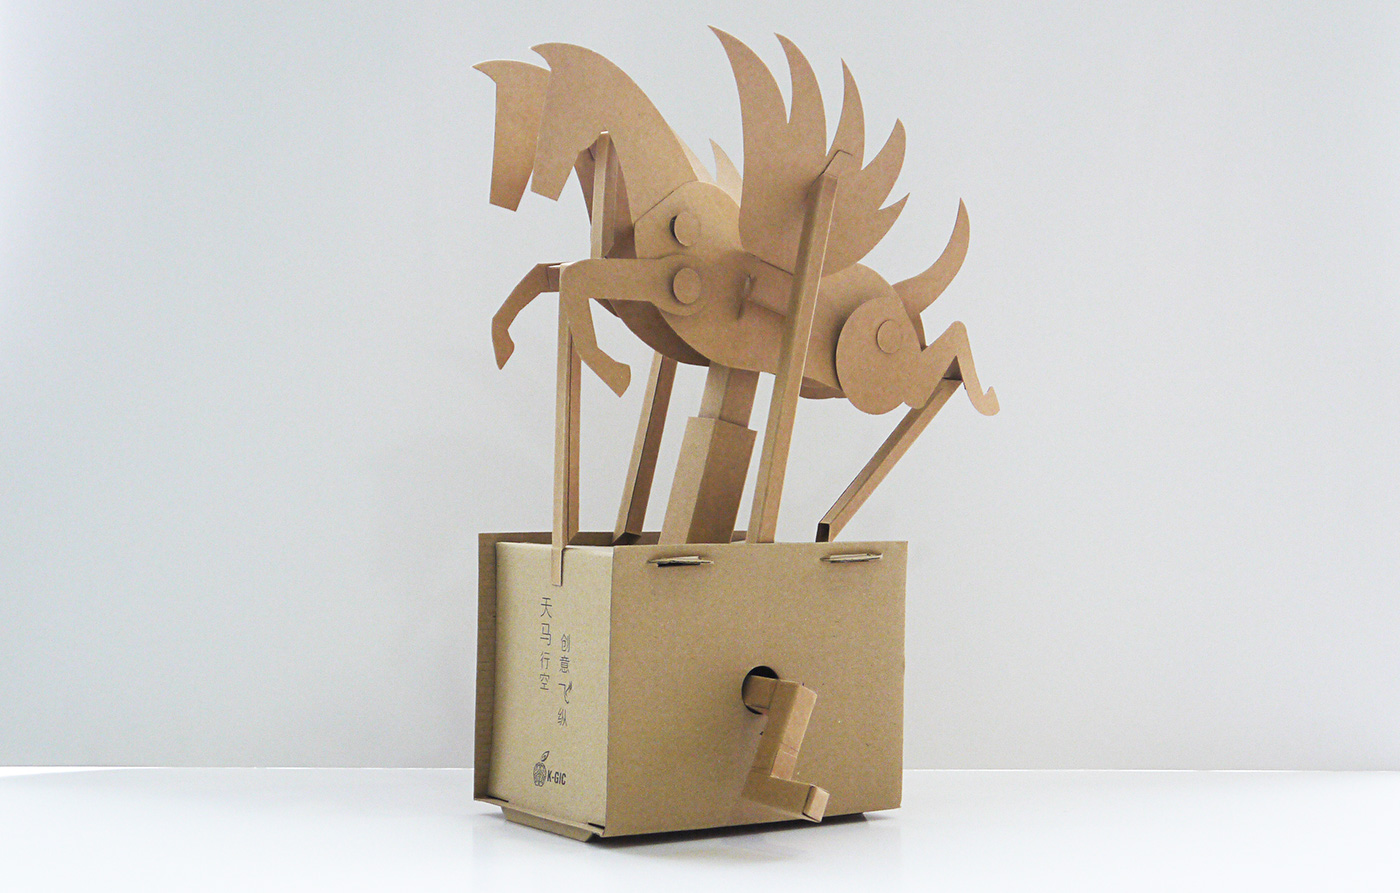 Pegasus cardboard automata